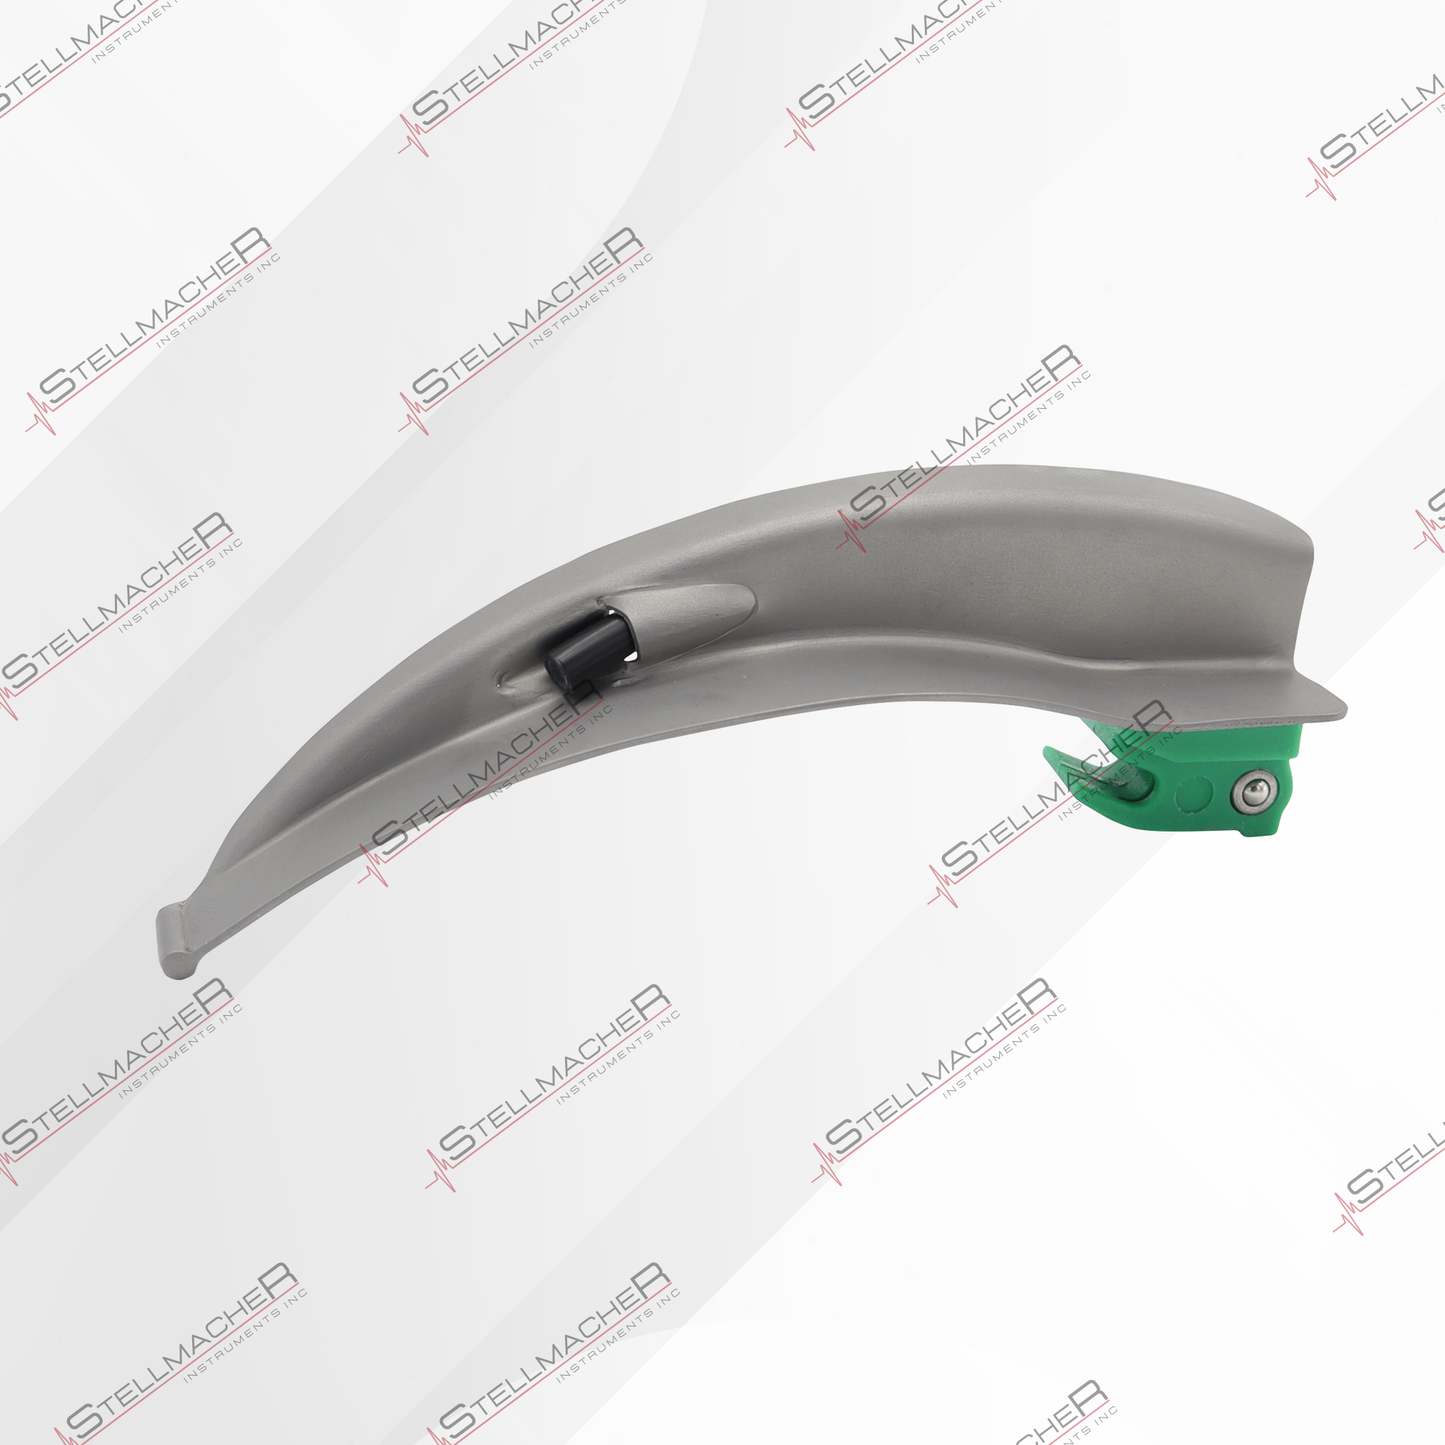 Single Use Medical Laryngoscope Blades Macintosh – 20 Pcs Pack